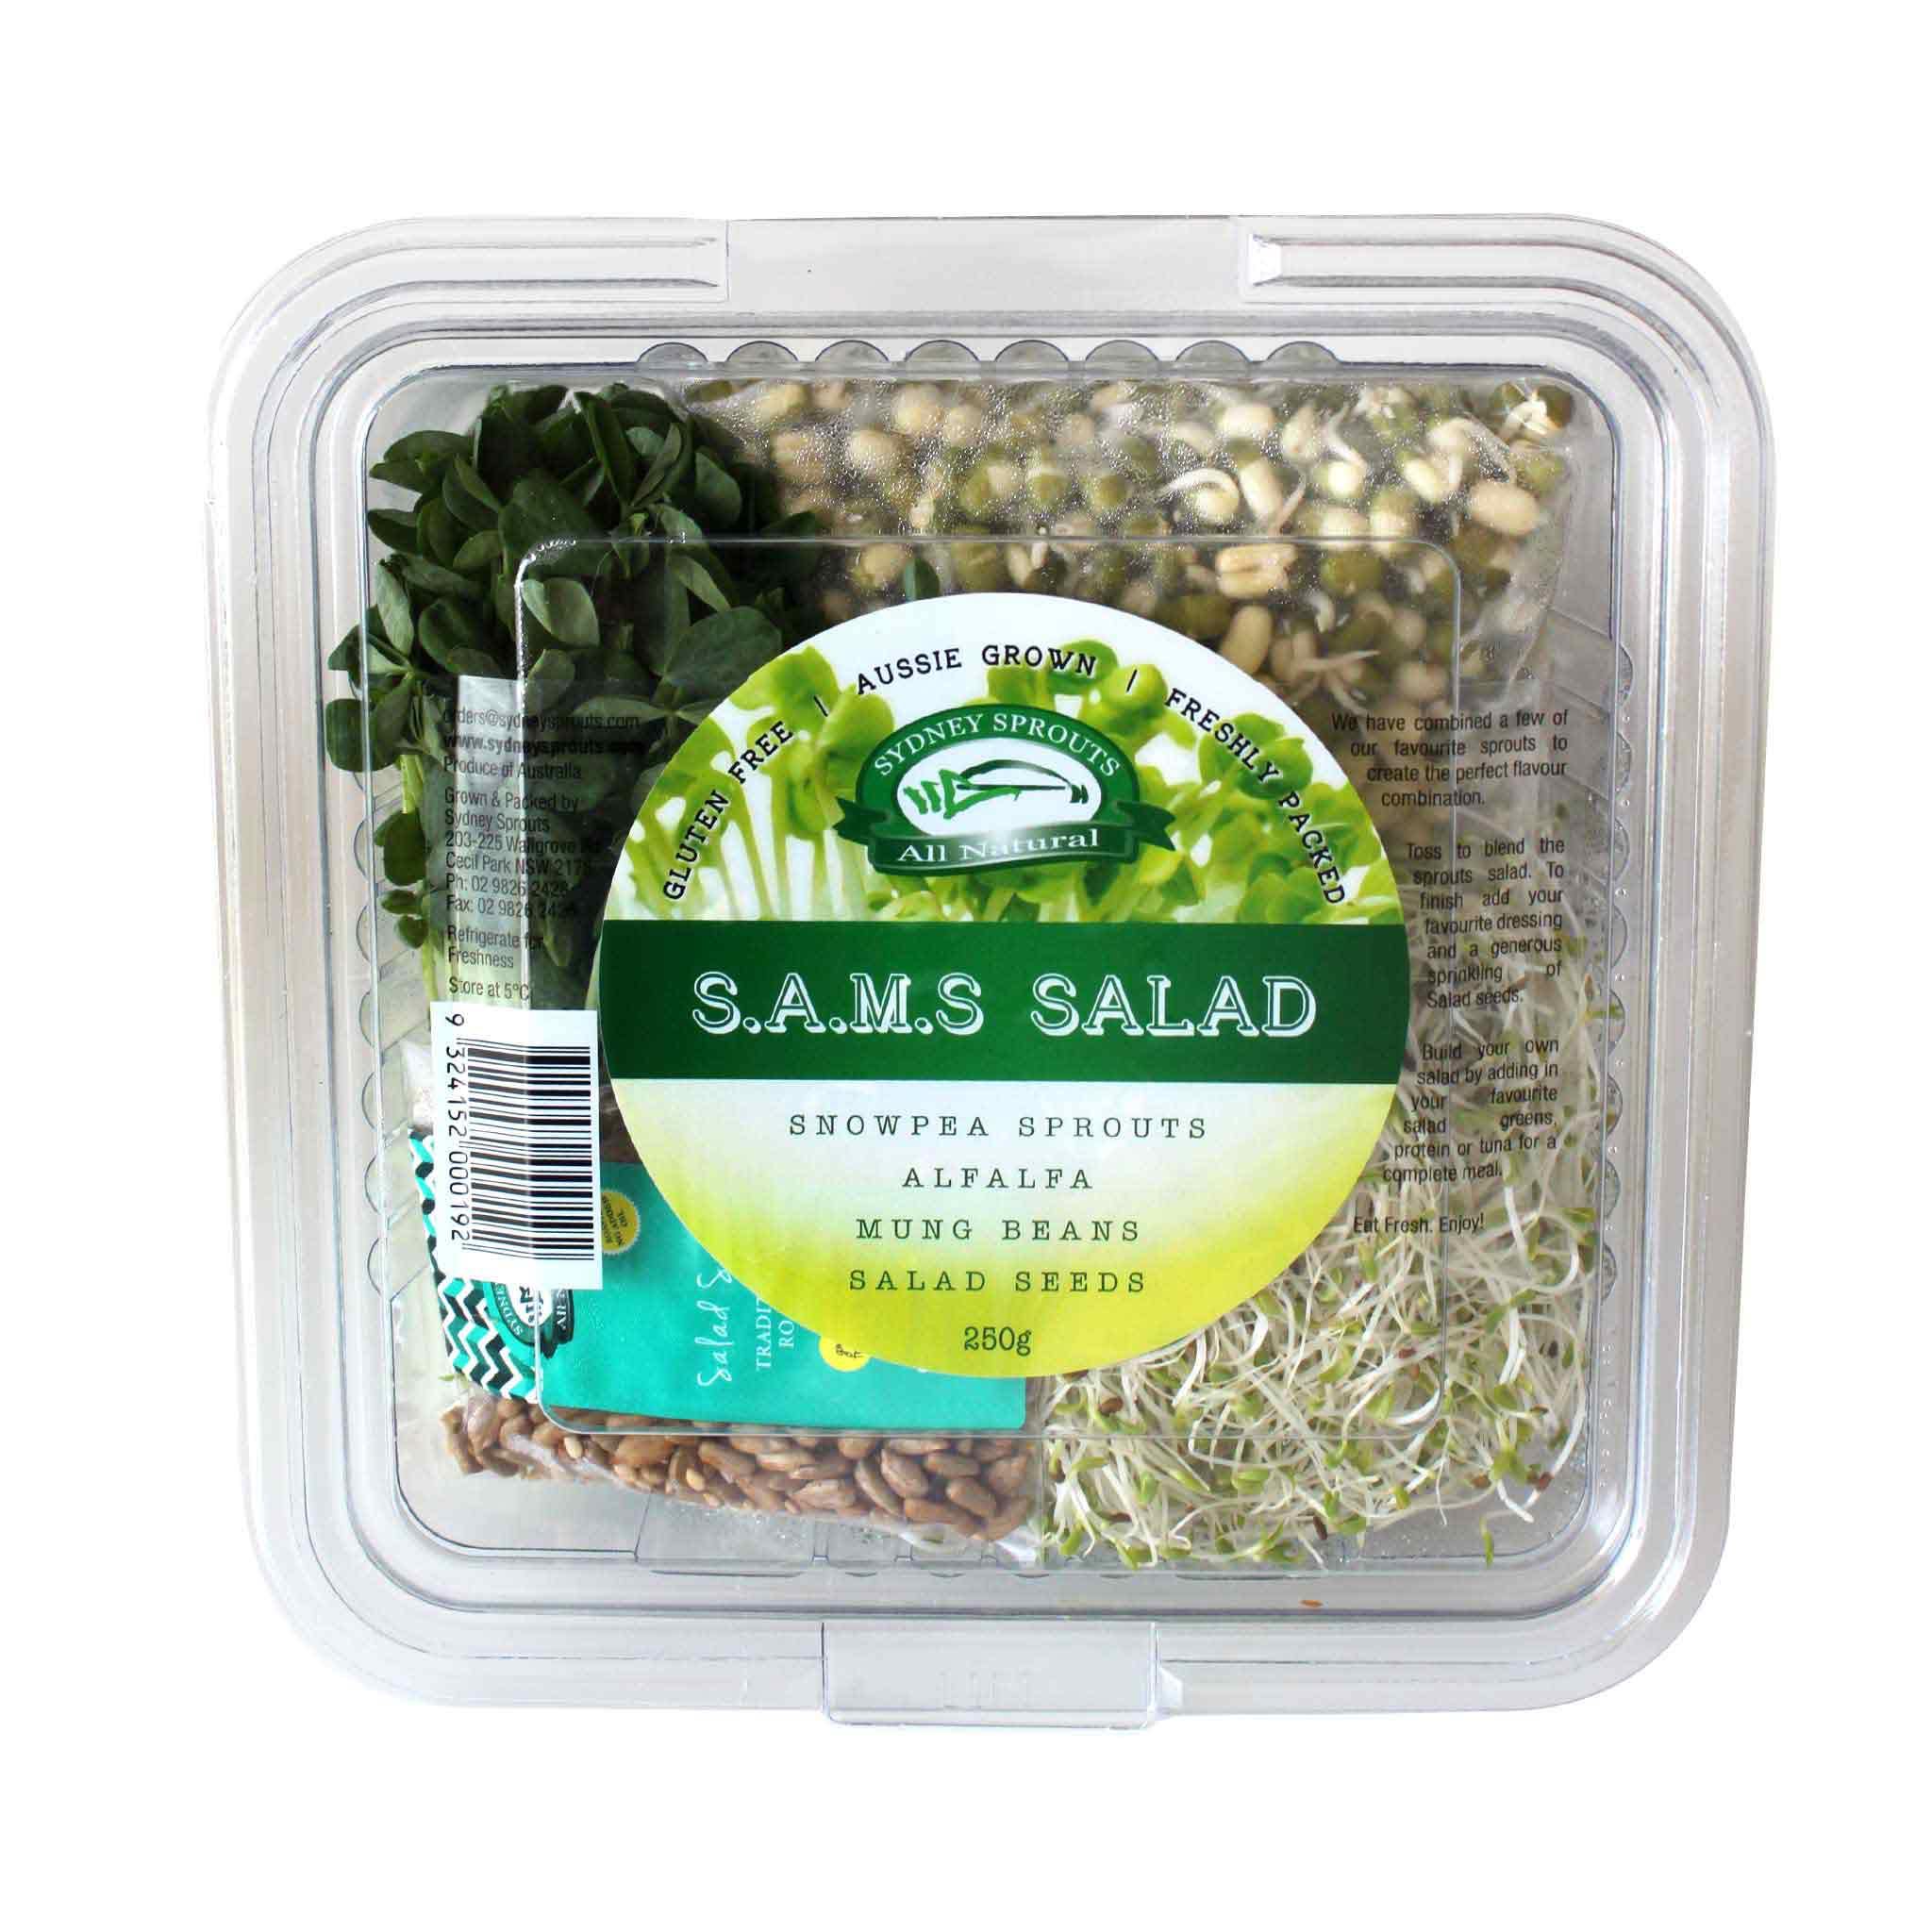 S.A.M.S Salad